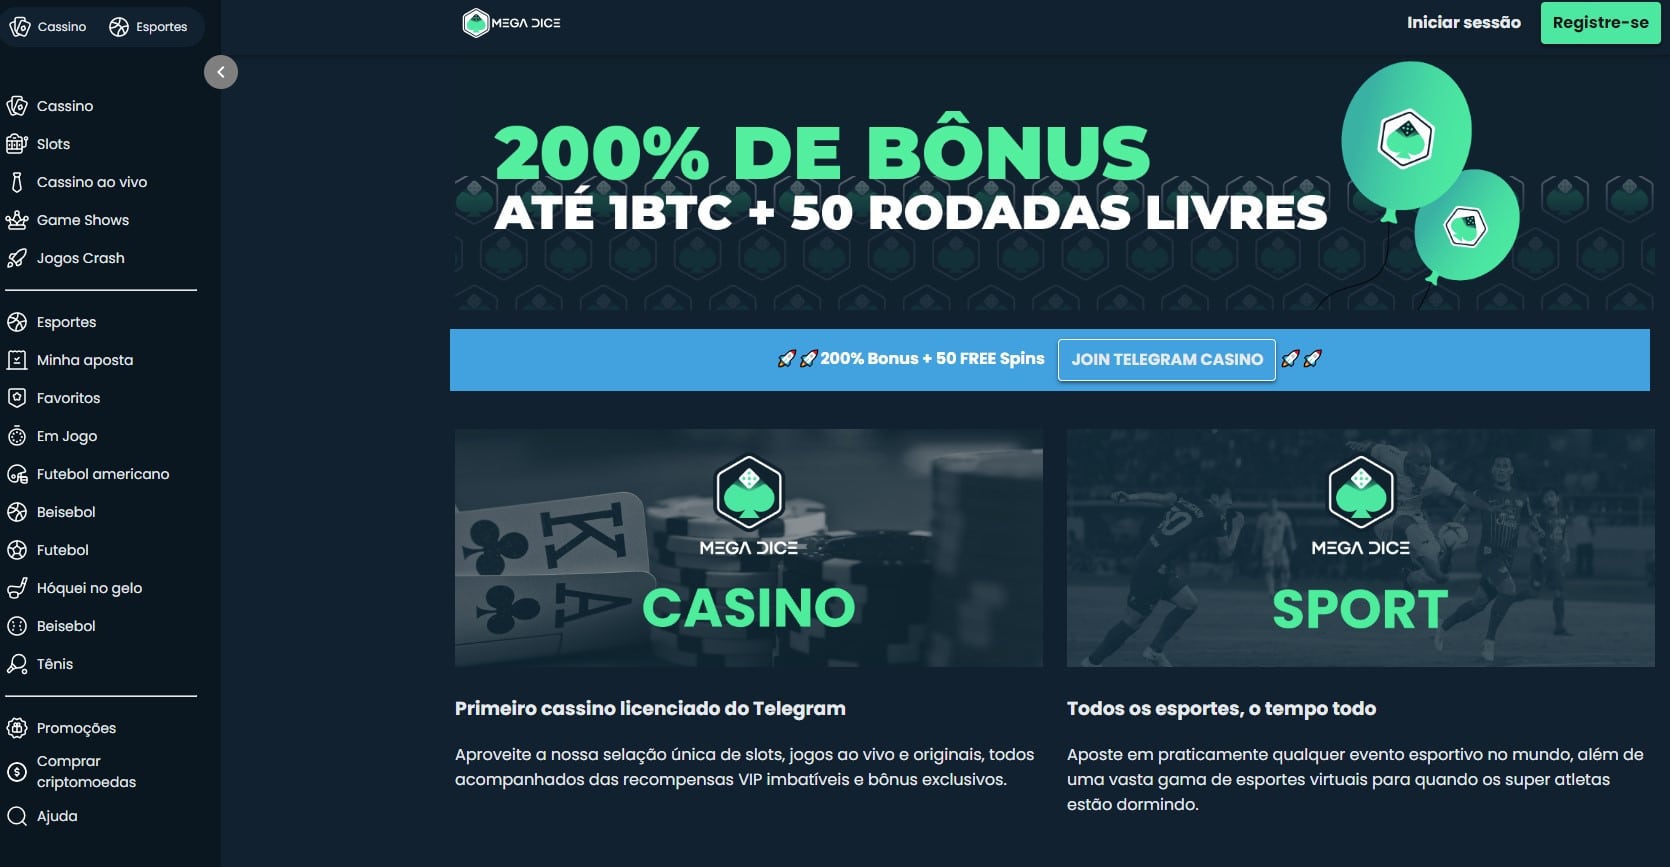 Crypto.com lança sorteio que dará 140 ingressos para jogos